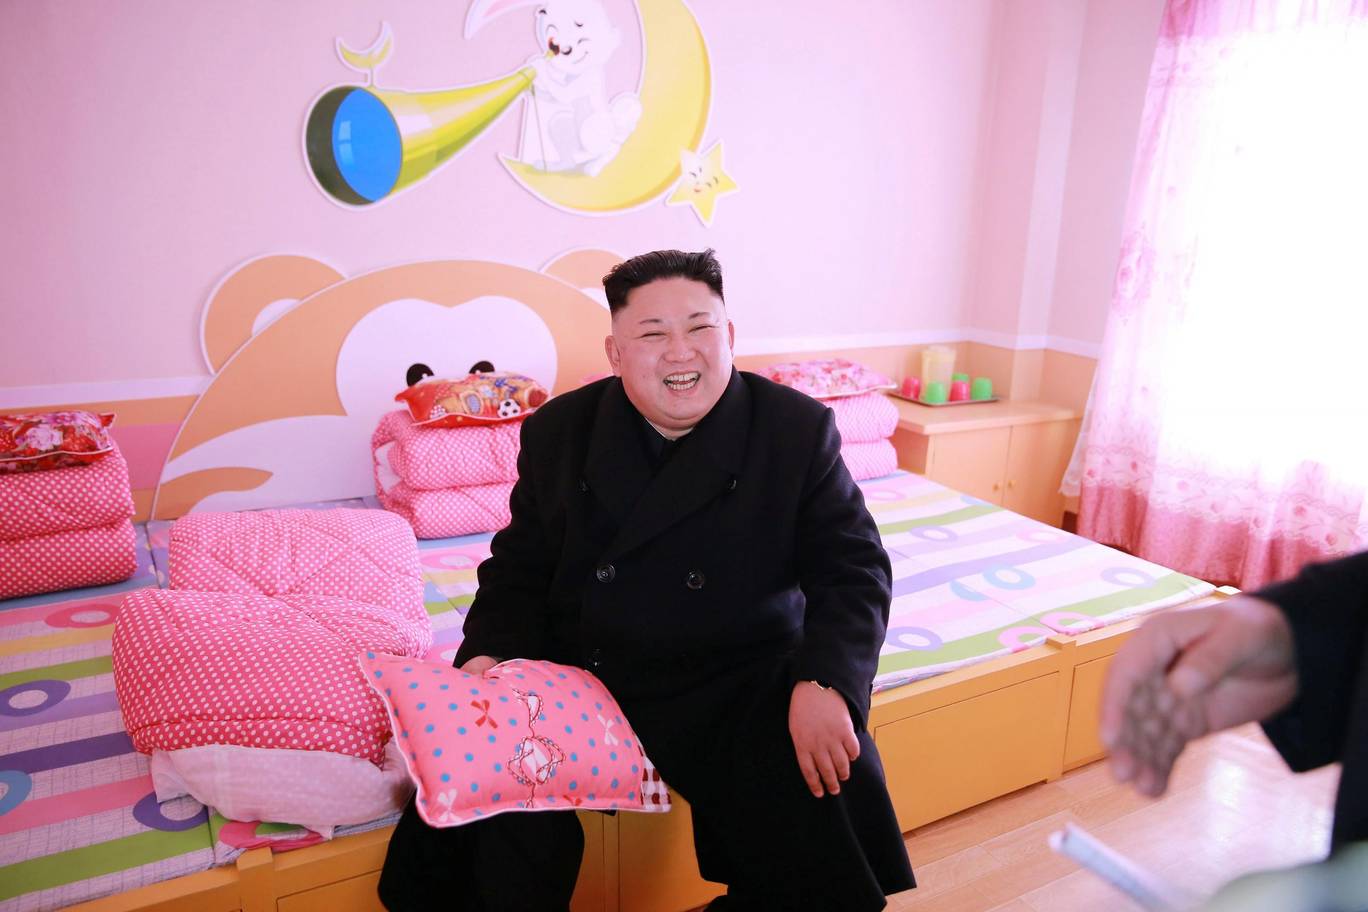 شاهد ما سيكون عليك فعله إن كنت أحد حراس أمن زعيم كوريا الشمالية 3